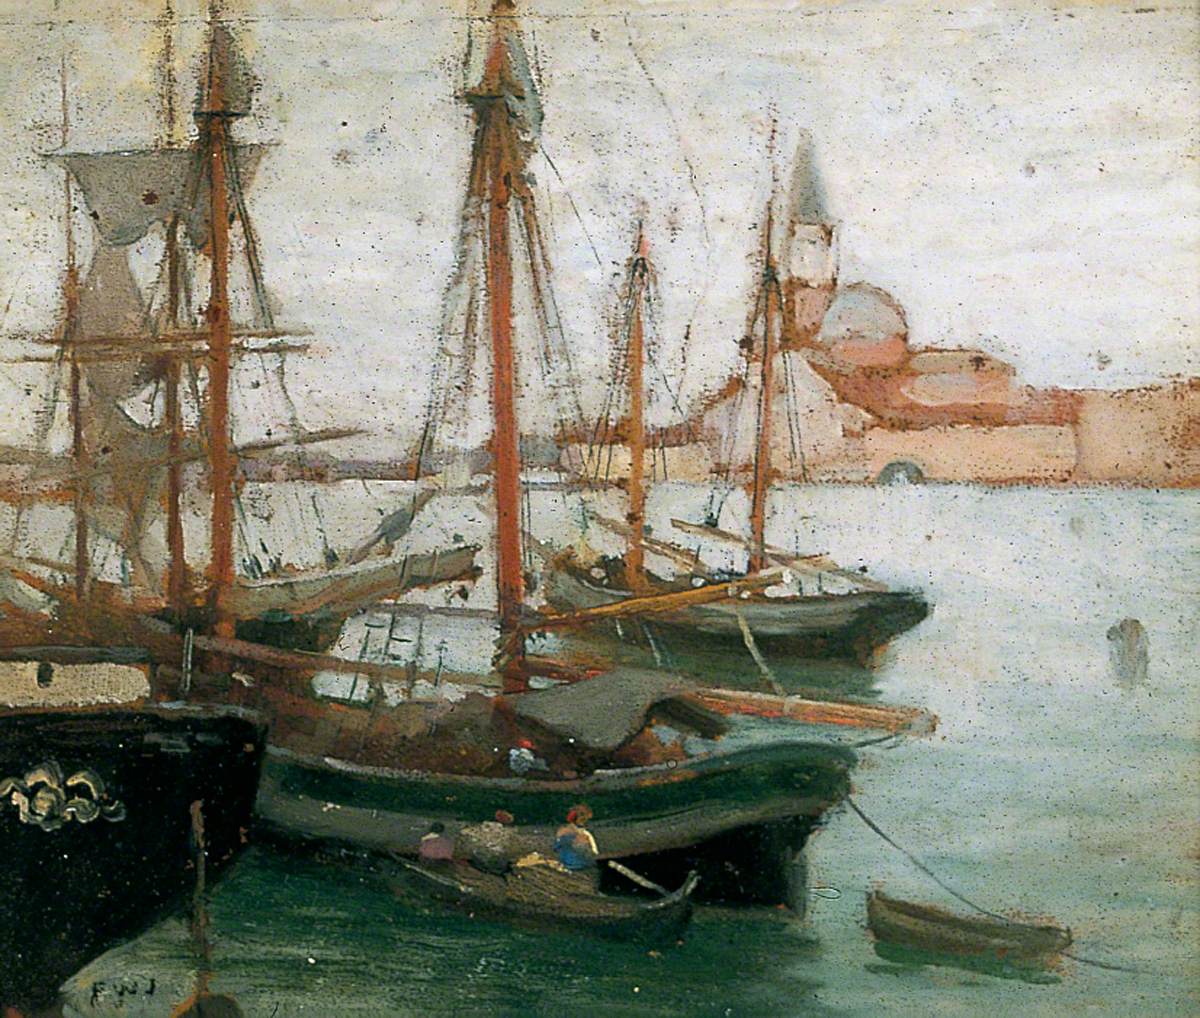 Ships in Venice